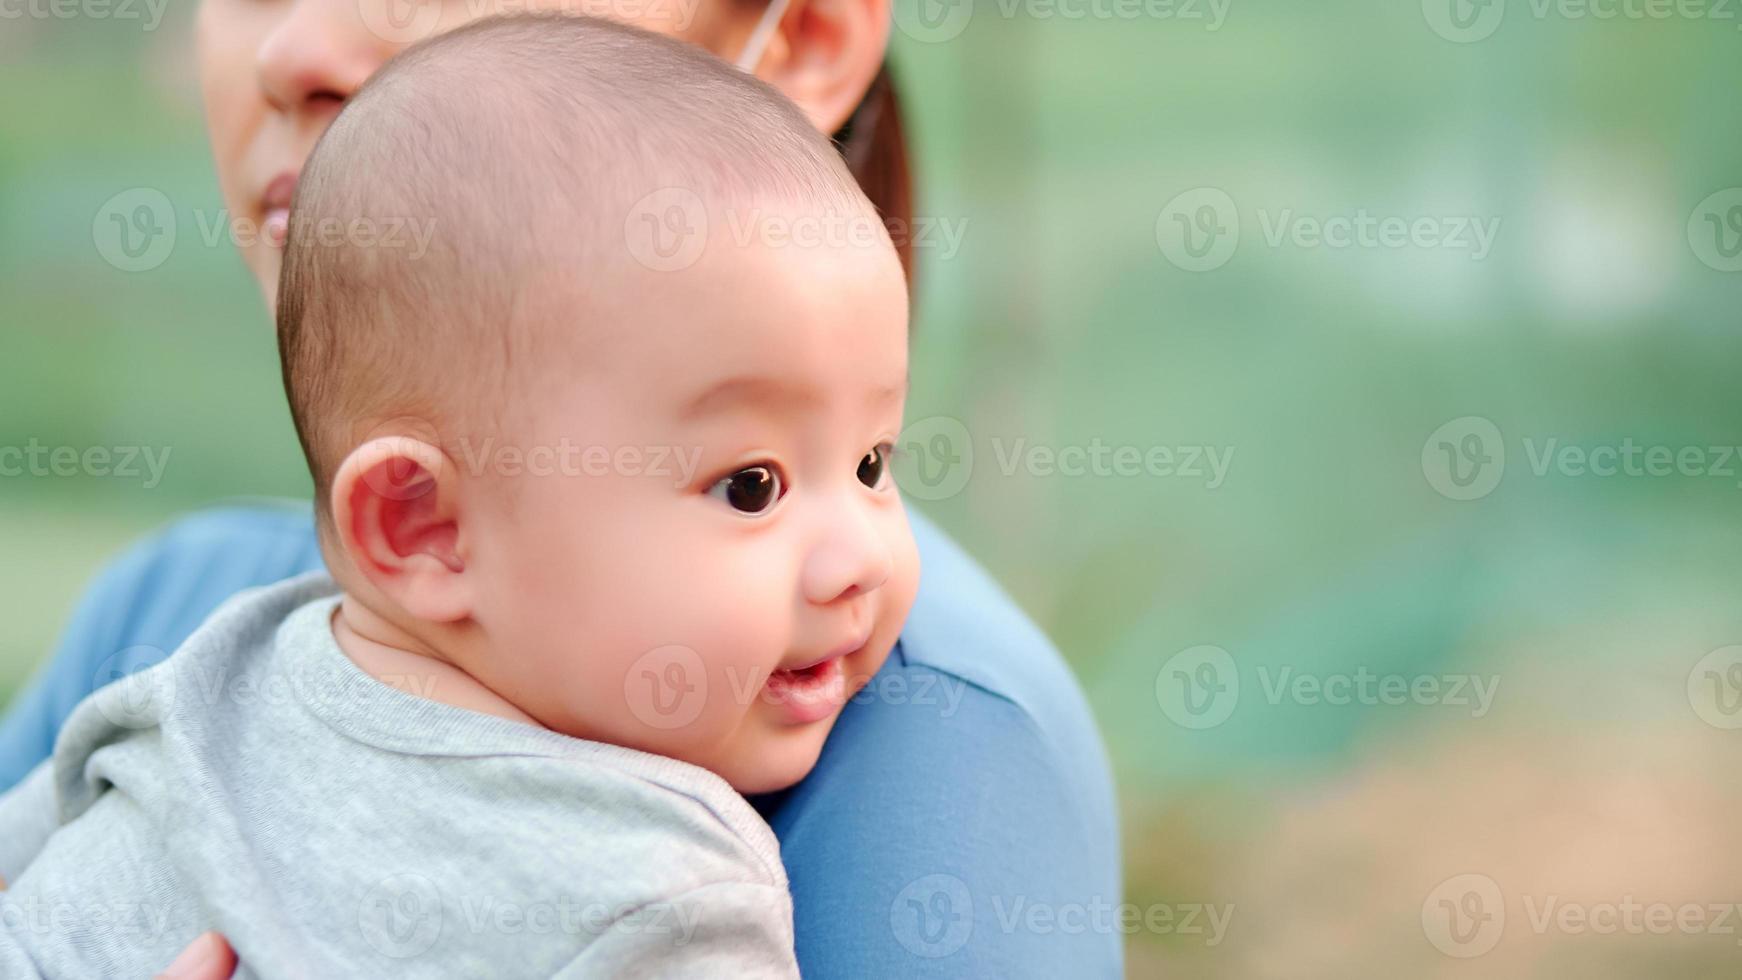 süßes, neugeborenes asiatisches Baby mit lächelndem, glücklichem Gesicht. Familie glücklich, asiatische junge Mutter trägt und kümmert sich mit Liebe. kleines unschuldiges neugeborenes kind am ersten lebenstag. Muttertagskonzept. foto